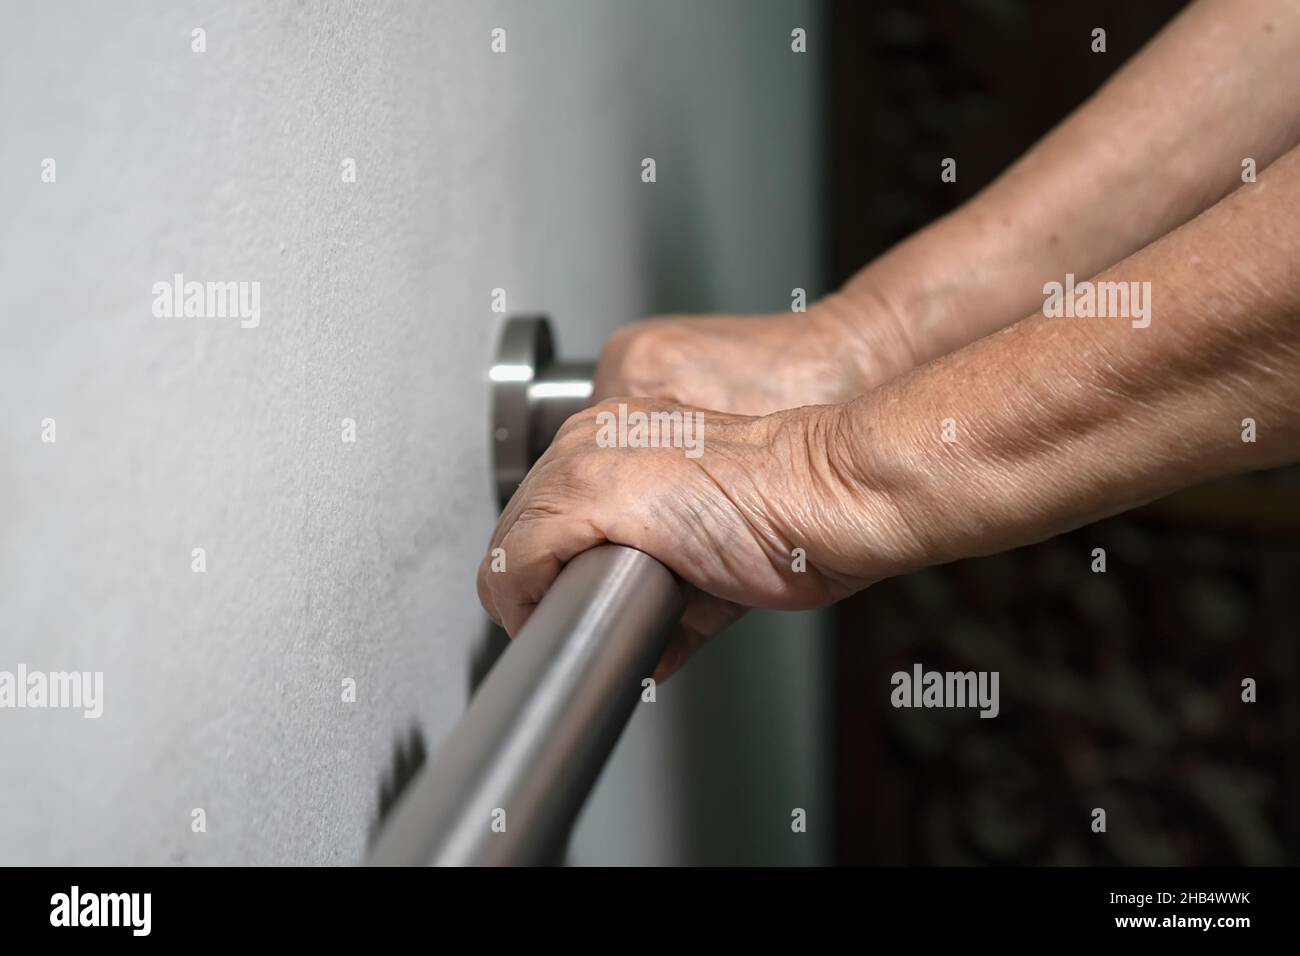 Ältere Frau, die die Hand am Handlauf hält, um das Gehen zu unterstützen Stockfoto